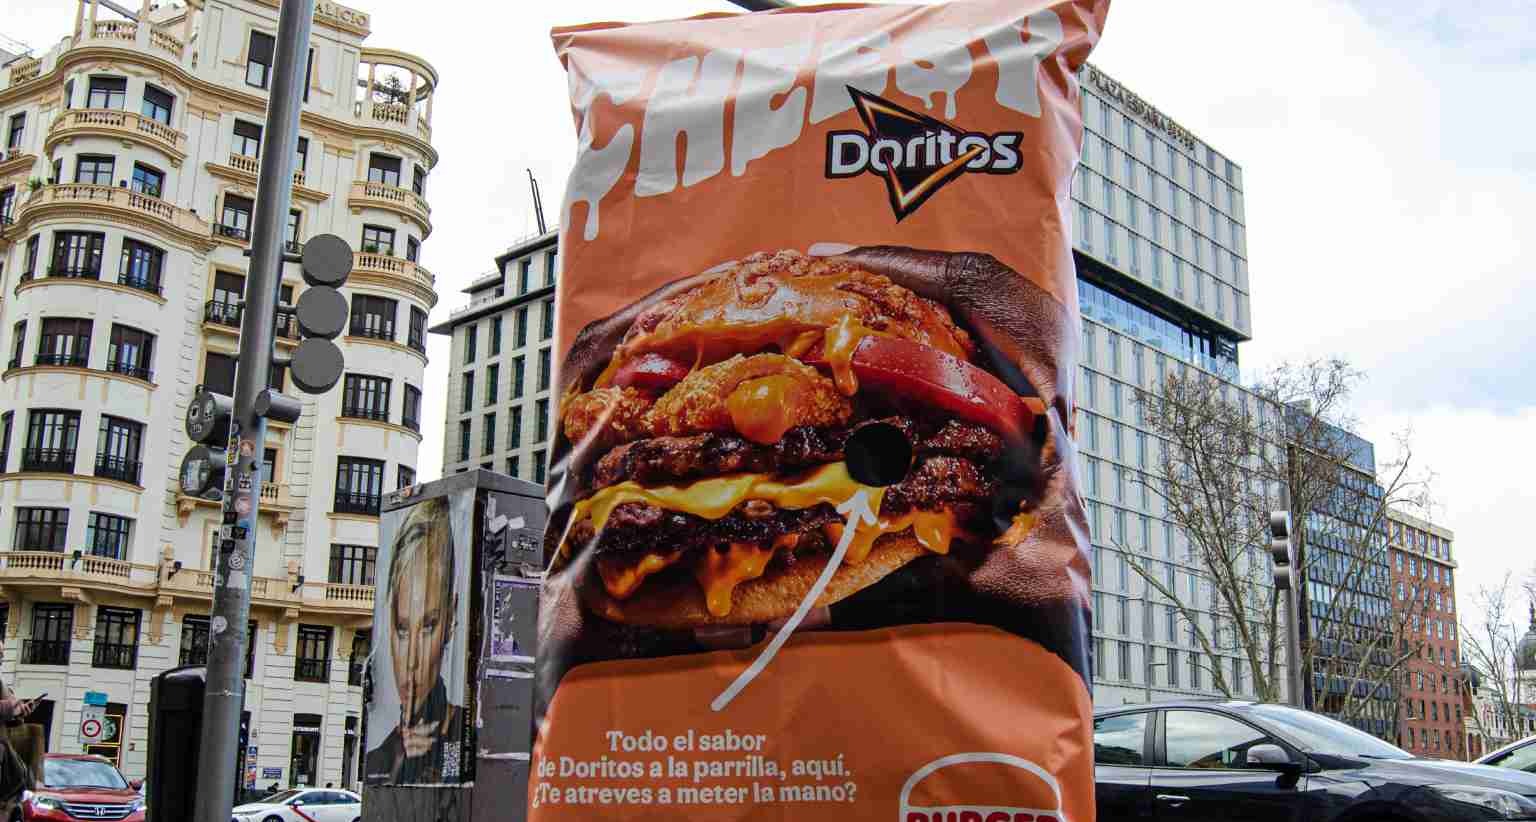 Burger King y Doritos se apoyan en la publicidad exterior para promocionar su co-branding